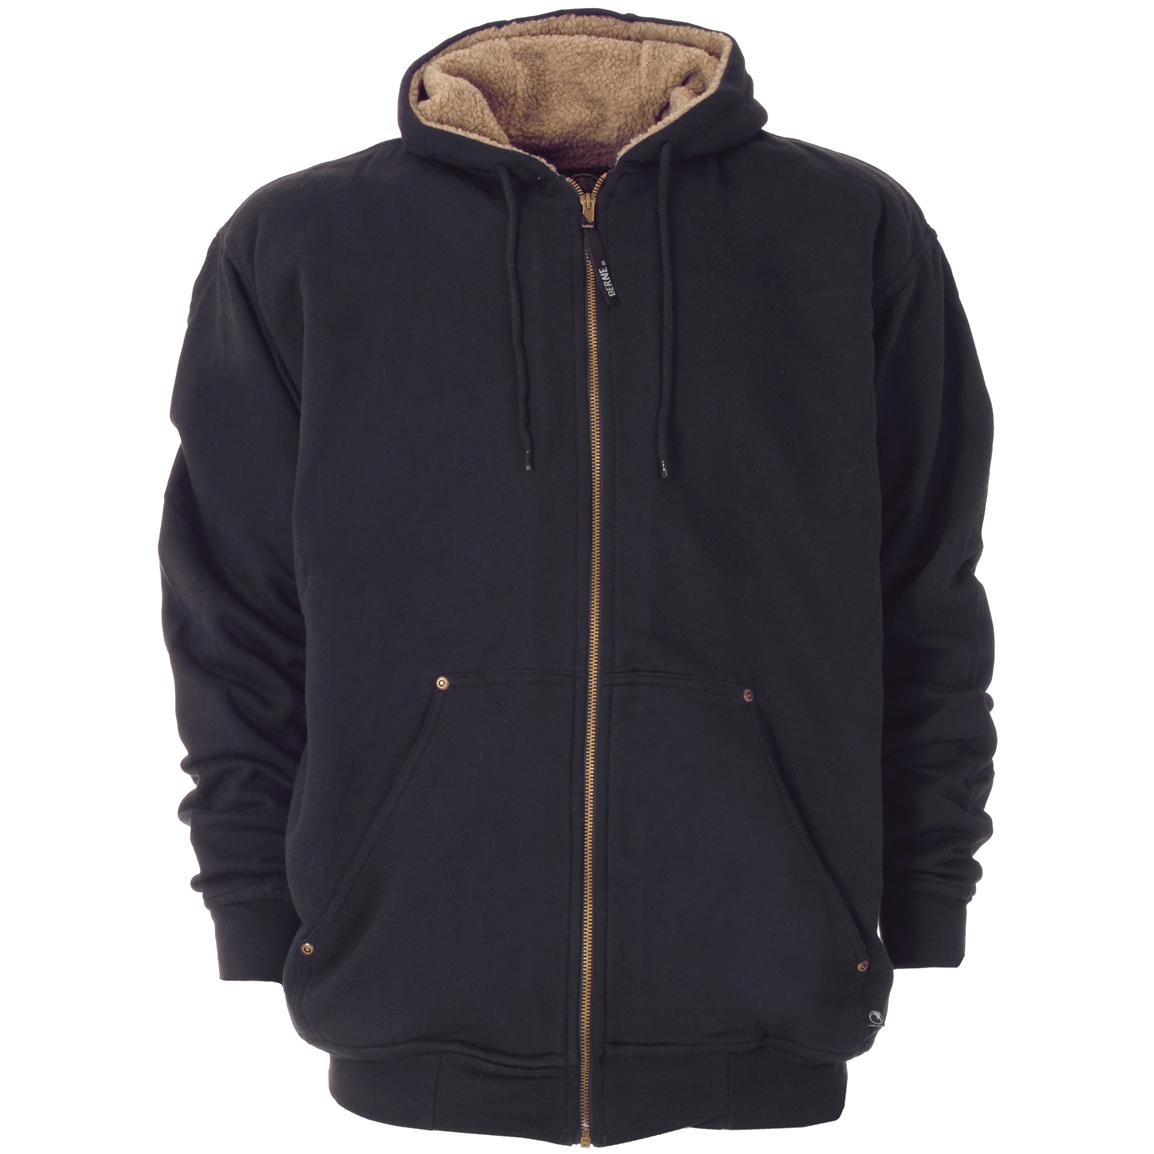 Sherpa - lined Zip Hoodie from Berne® - 221606, Sweatshirts & Hoodies ...